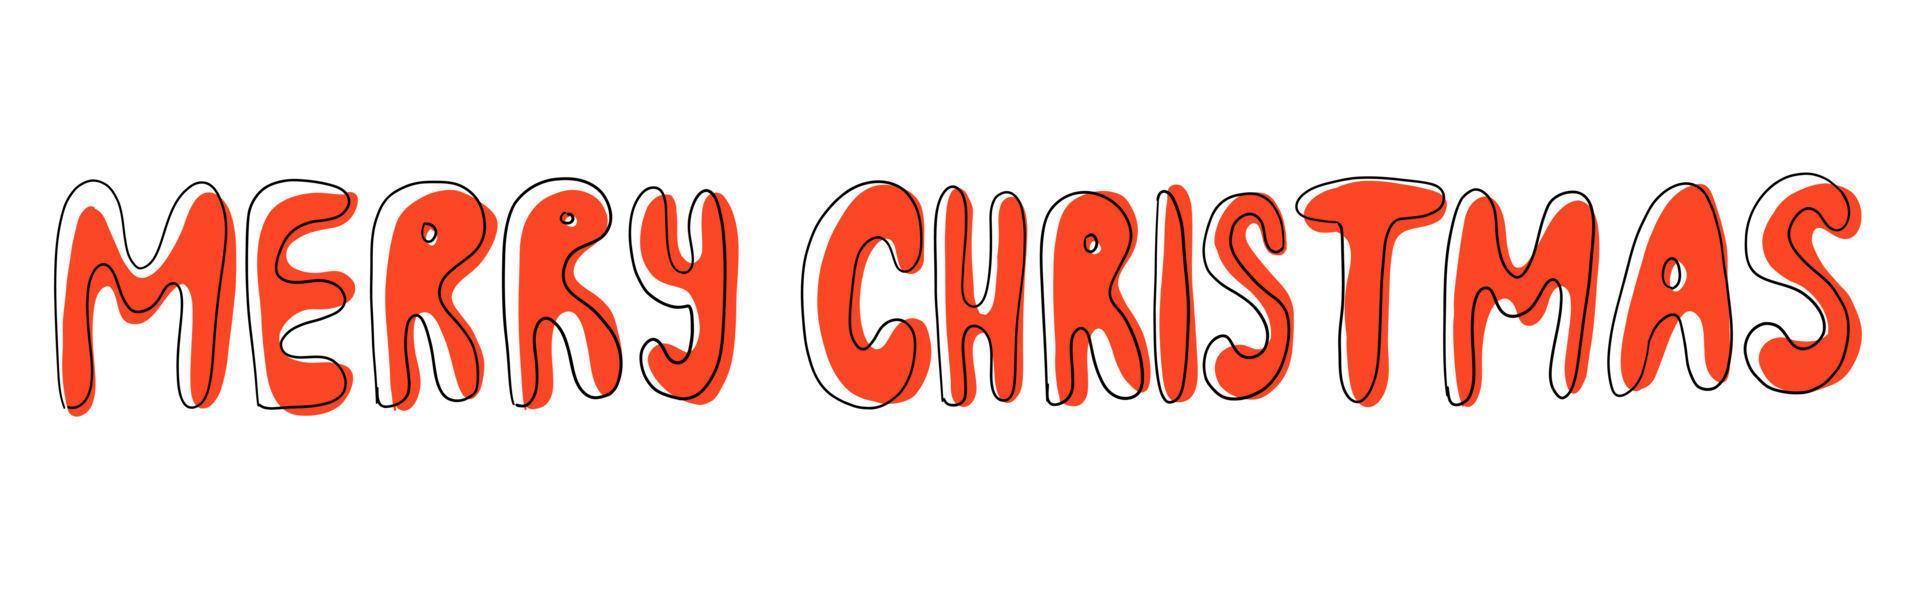 texte vectoriel joyeux Noël. lettrage dessiné à la main. illustration isolé sur fond blanc.